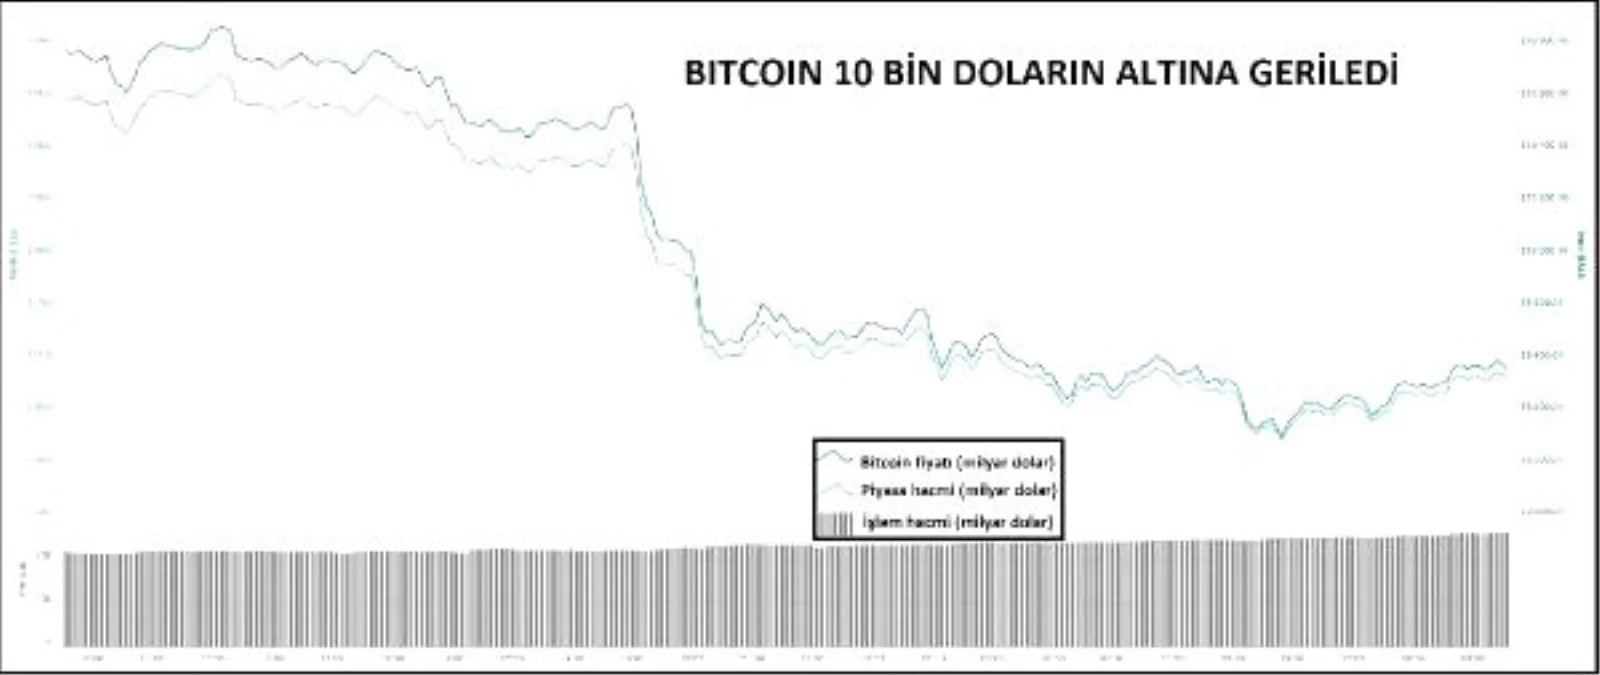 KRİPTOPARA – Bitcoin 10 bin doların altına geriledi